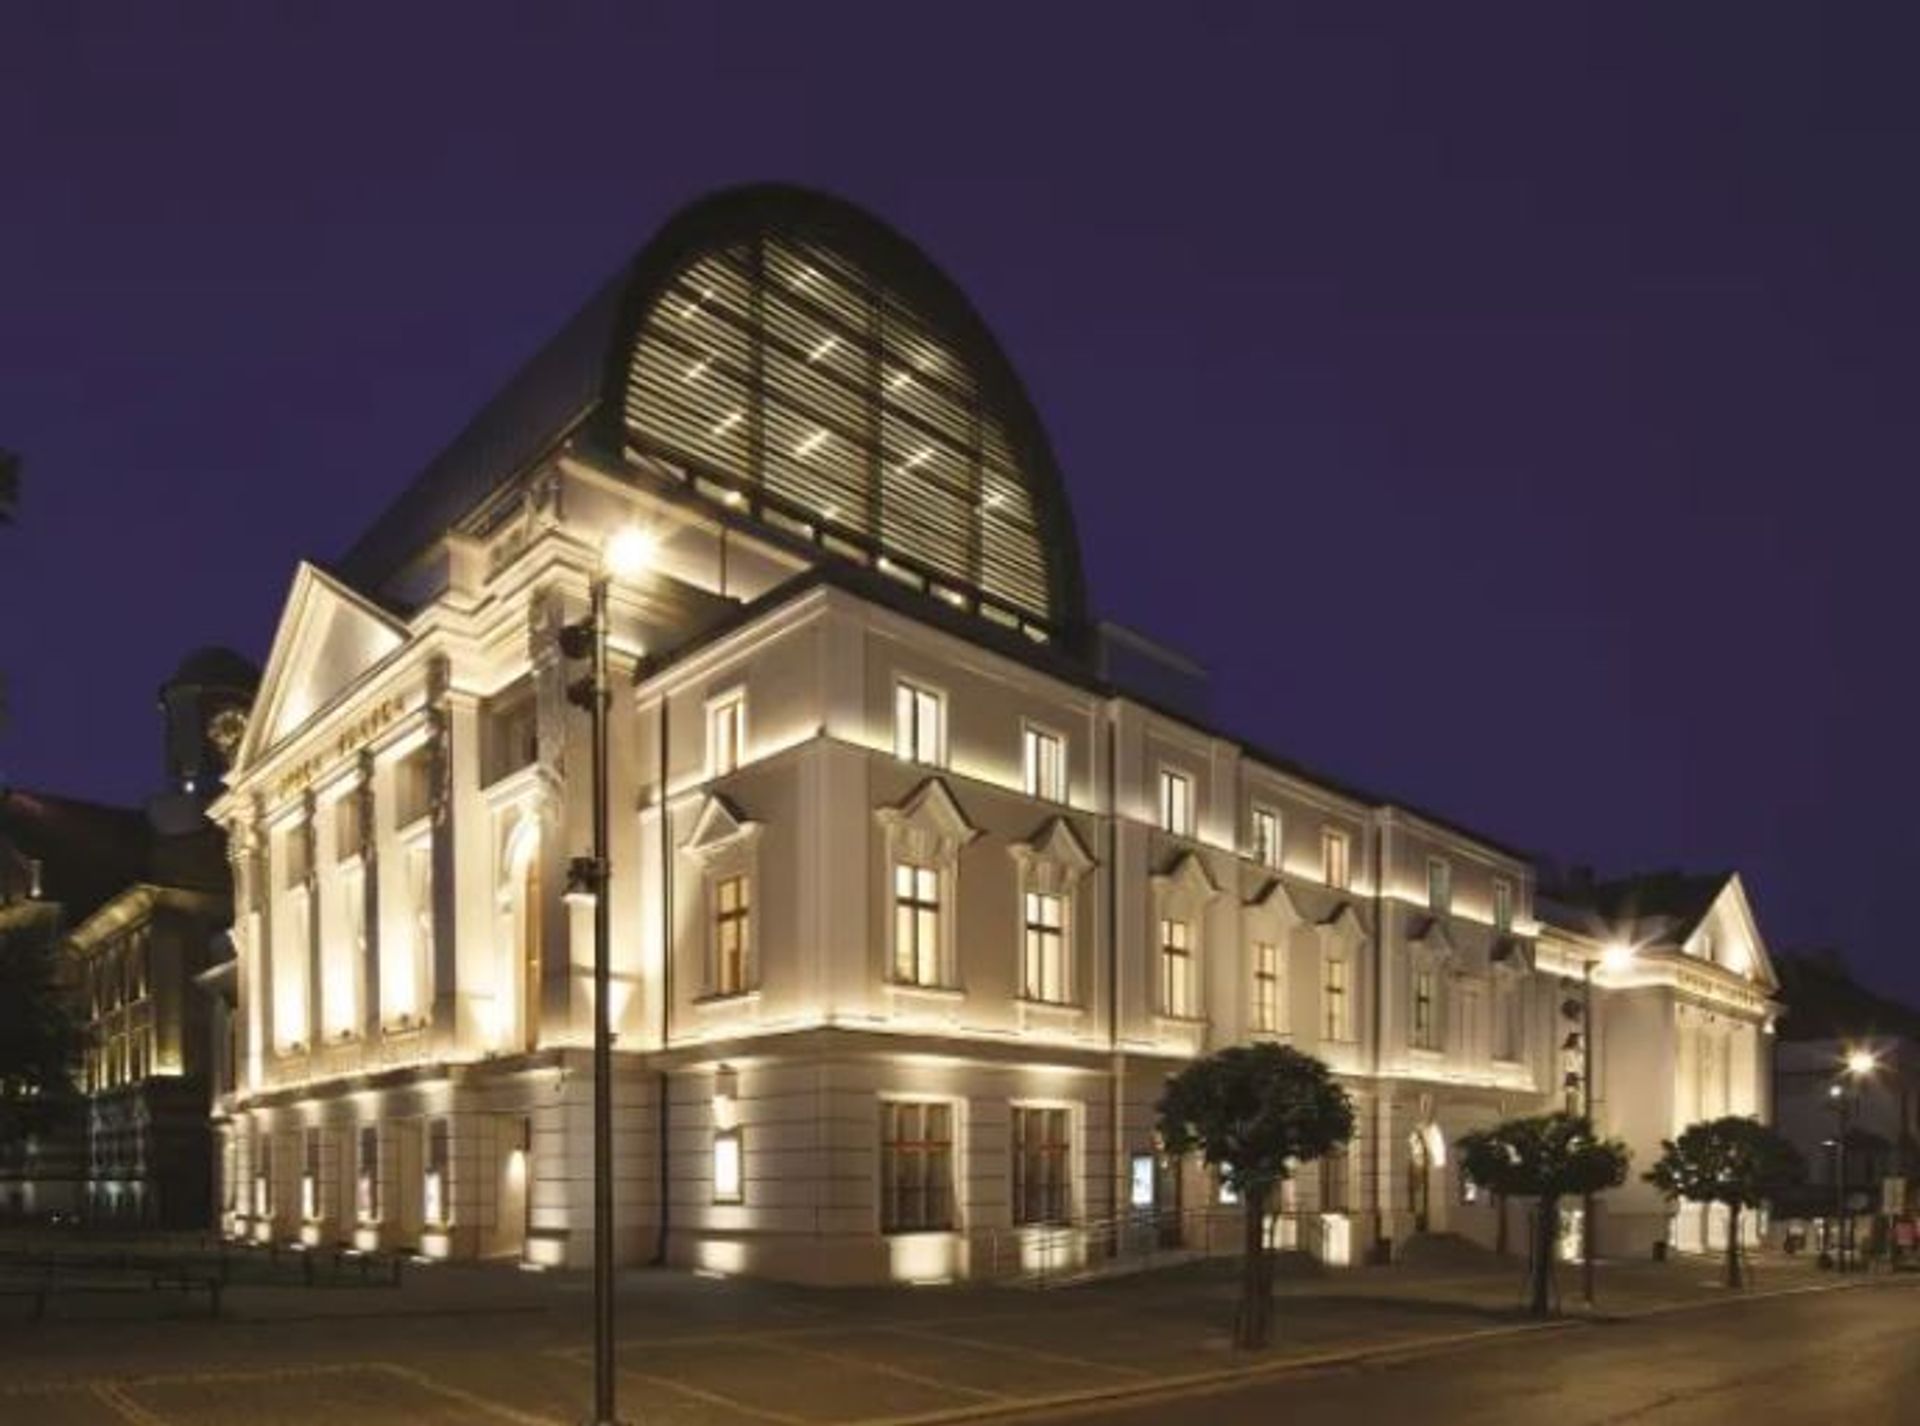 Remont zabytkowego budynku Opery Śląskiej w Bytomiu na finiszu – trwają prace wykończeniowe 